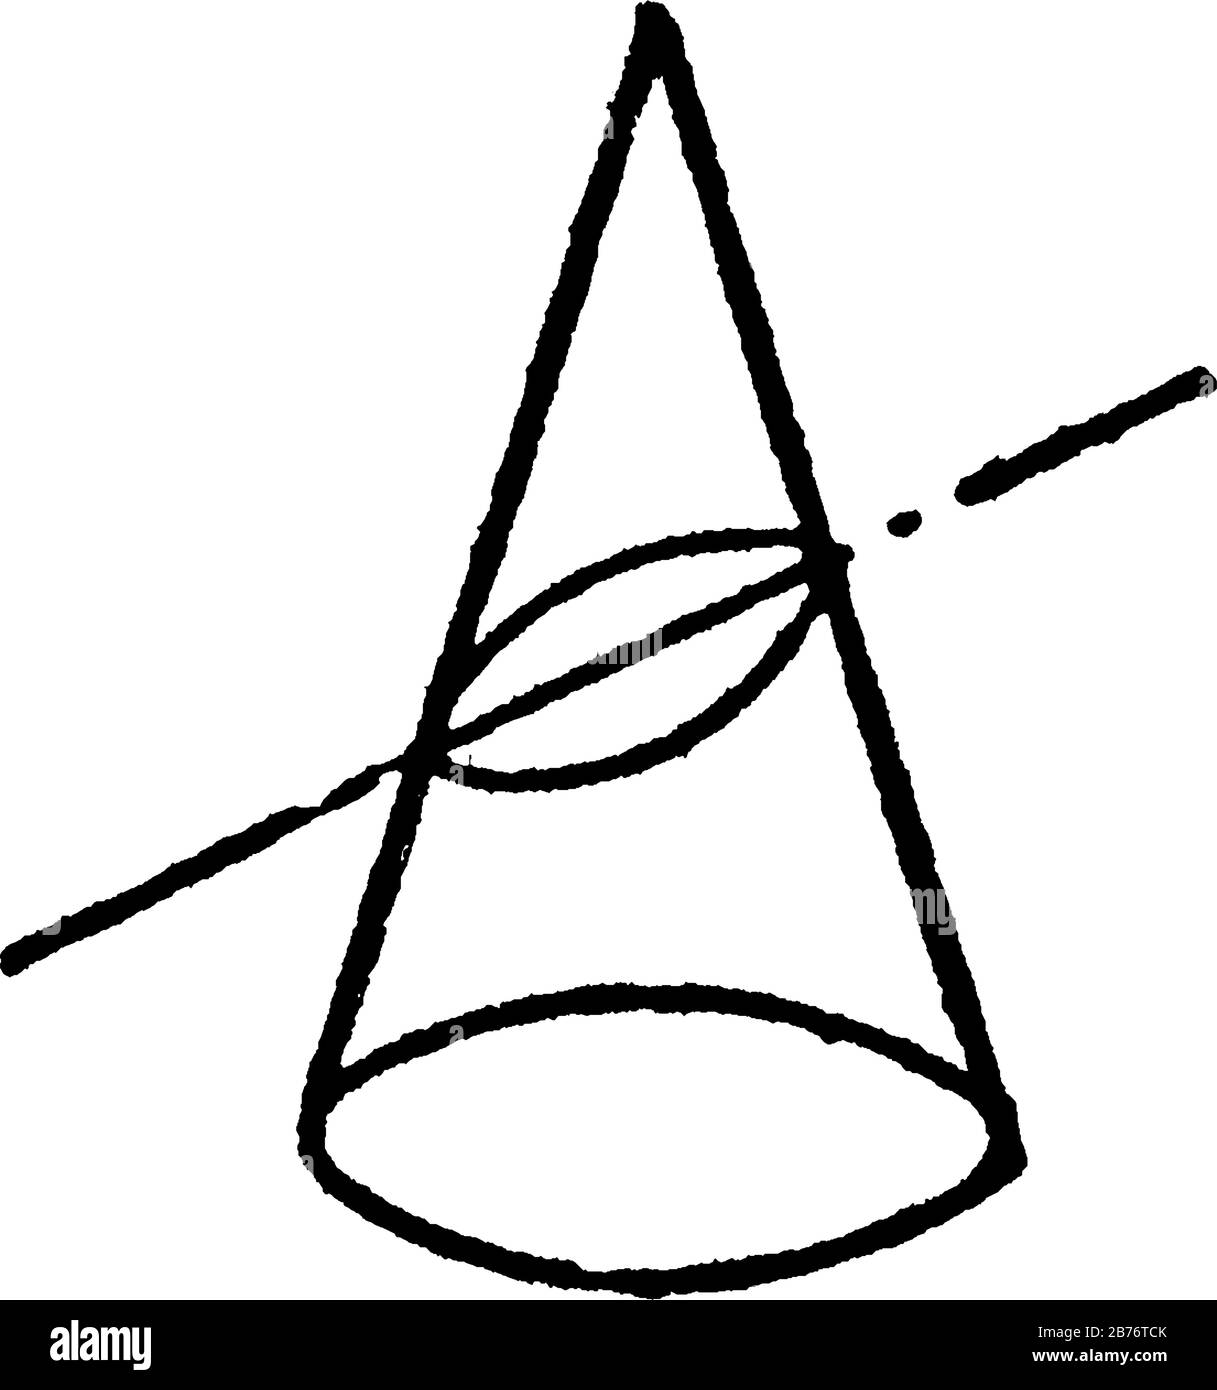 Mostra che il cono è intersecato da un piano né parallelo né perpendicolare alla base, né parallelo ad un lato. Così, formando un'ellisse, vi Illustrazione Vettoriale